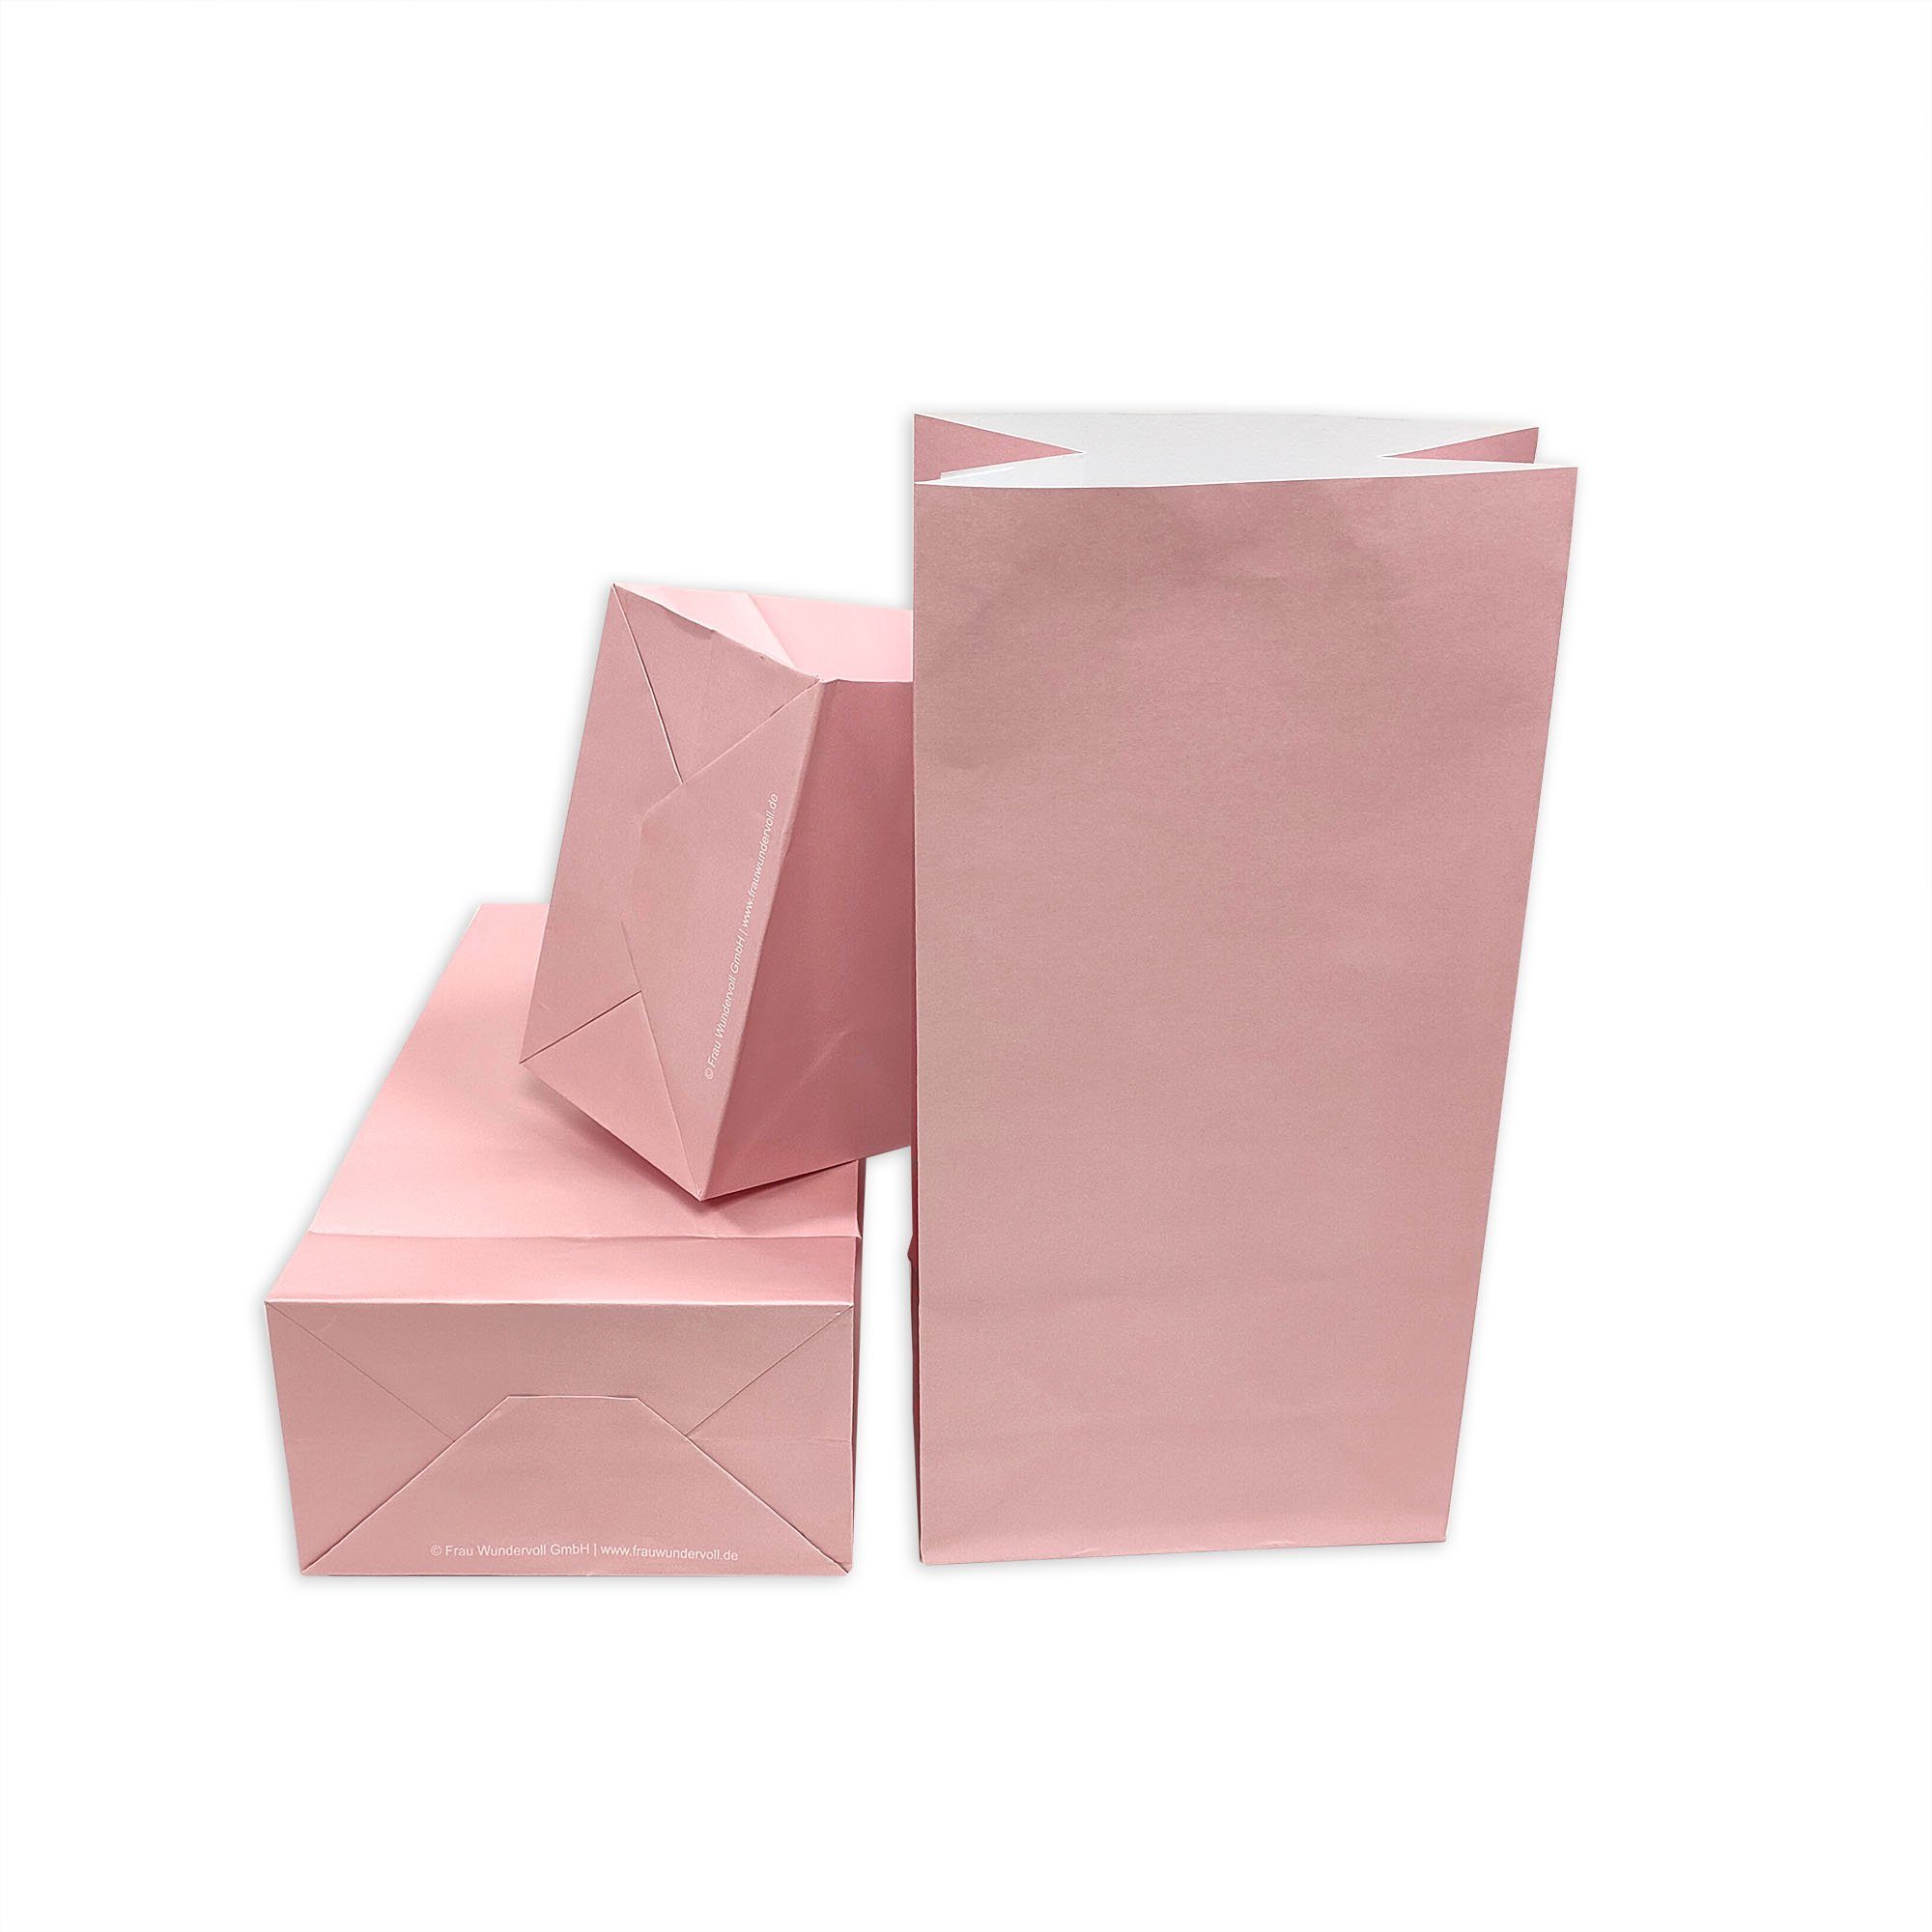 Frau WUNDERVoll Papierdekoration (Angebot 100g mit - Papiertüten Papier rosa, Boden